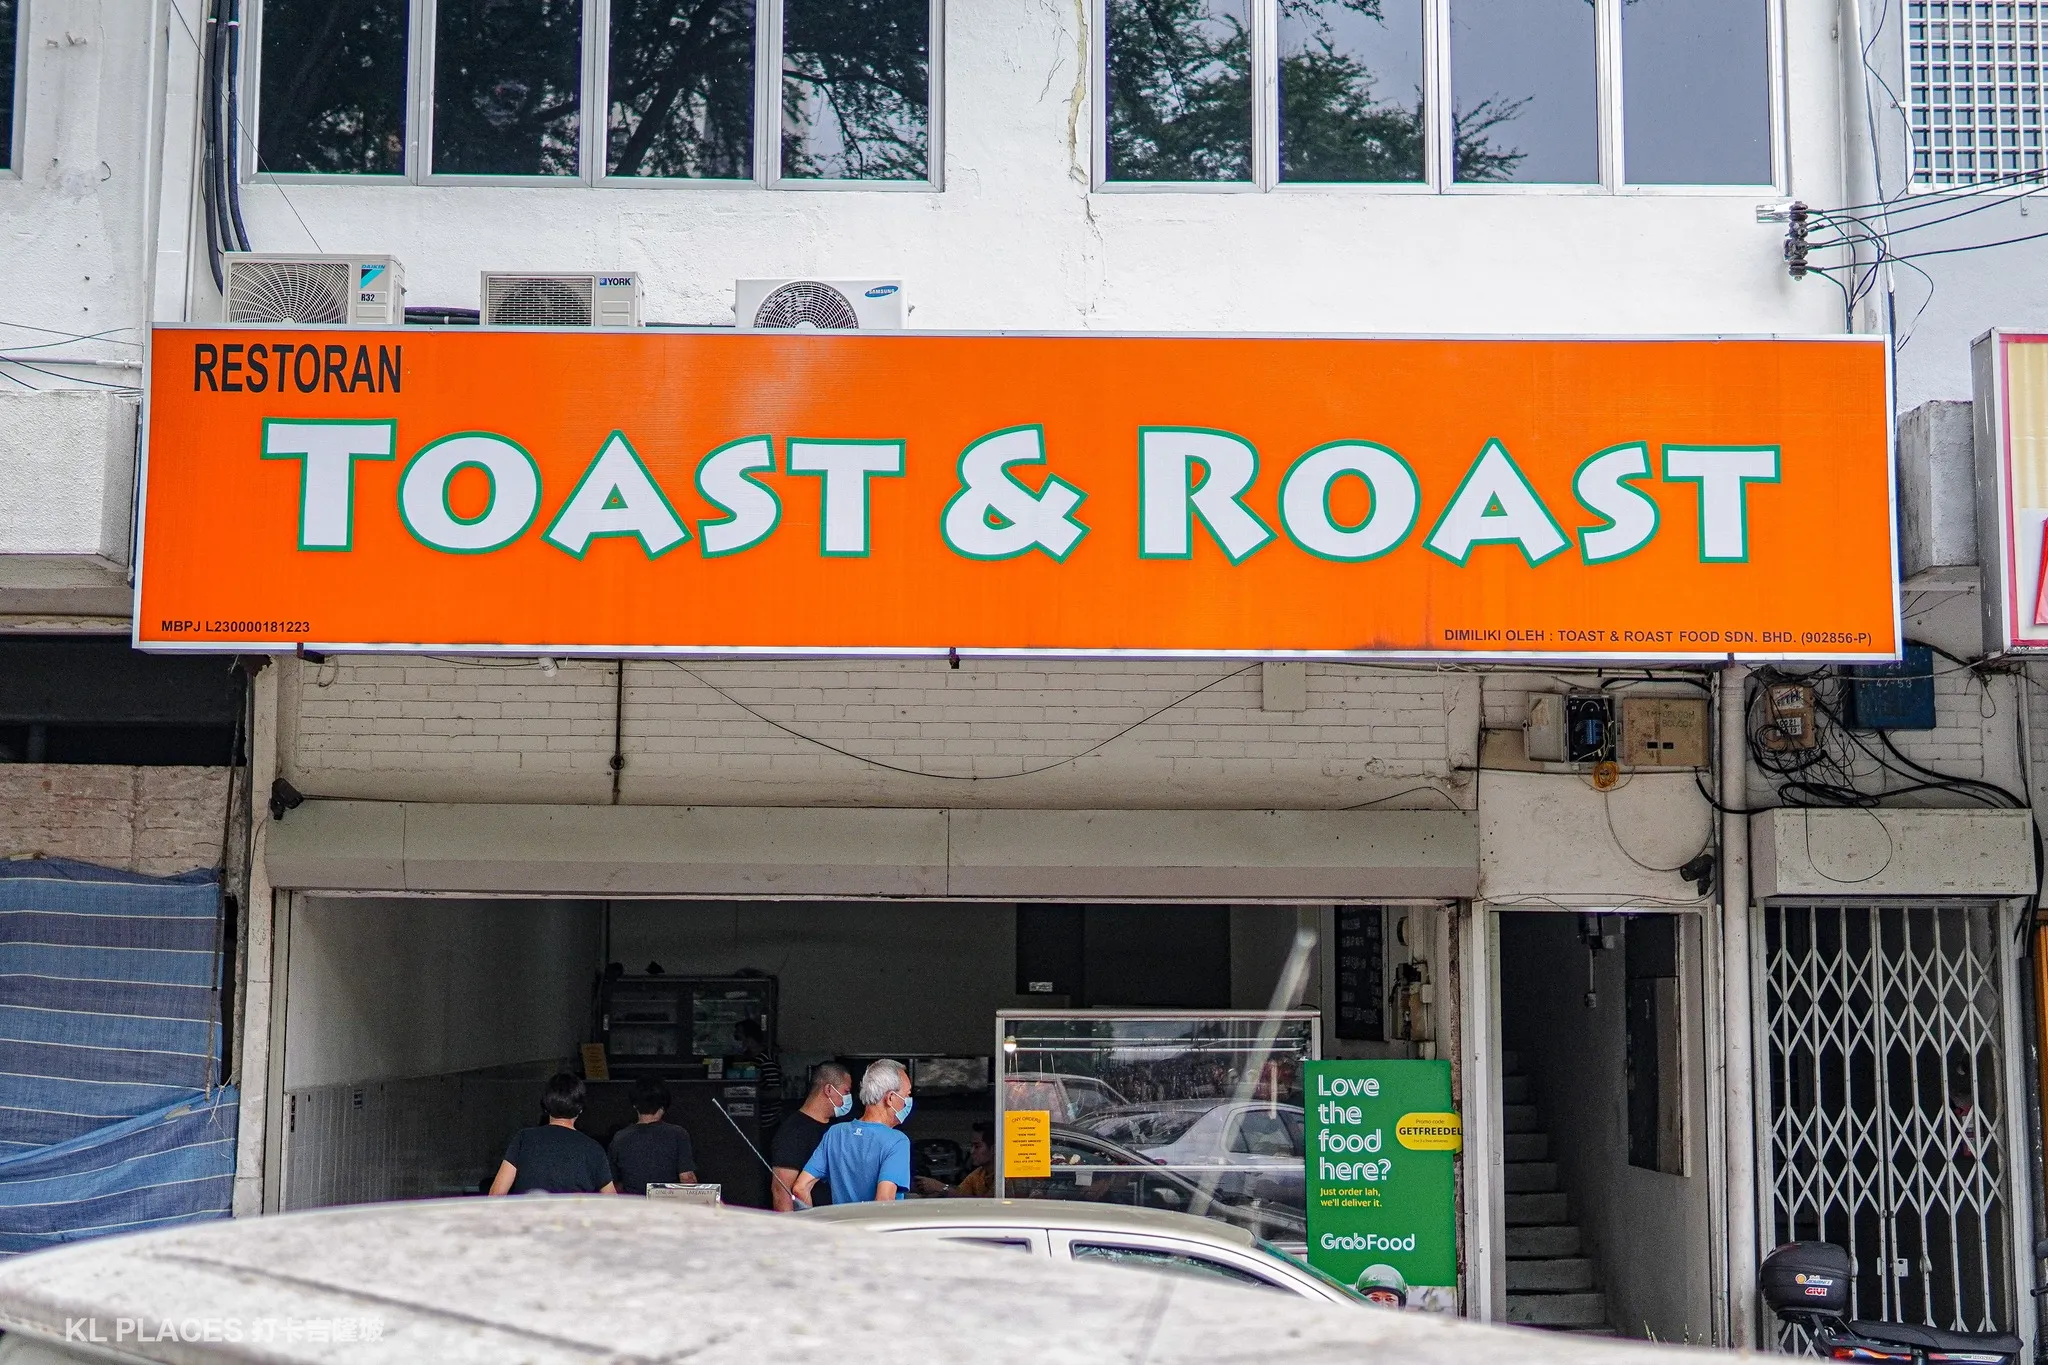 The Toast & Roast